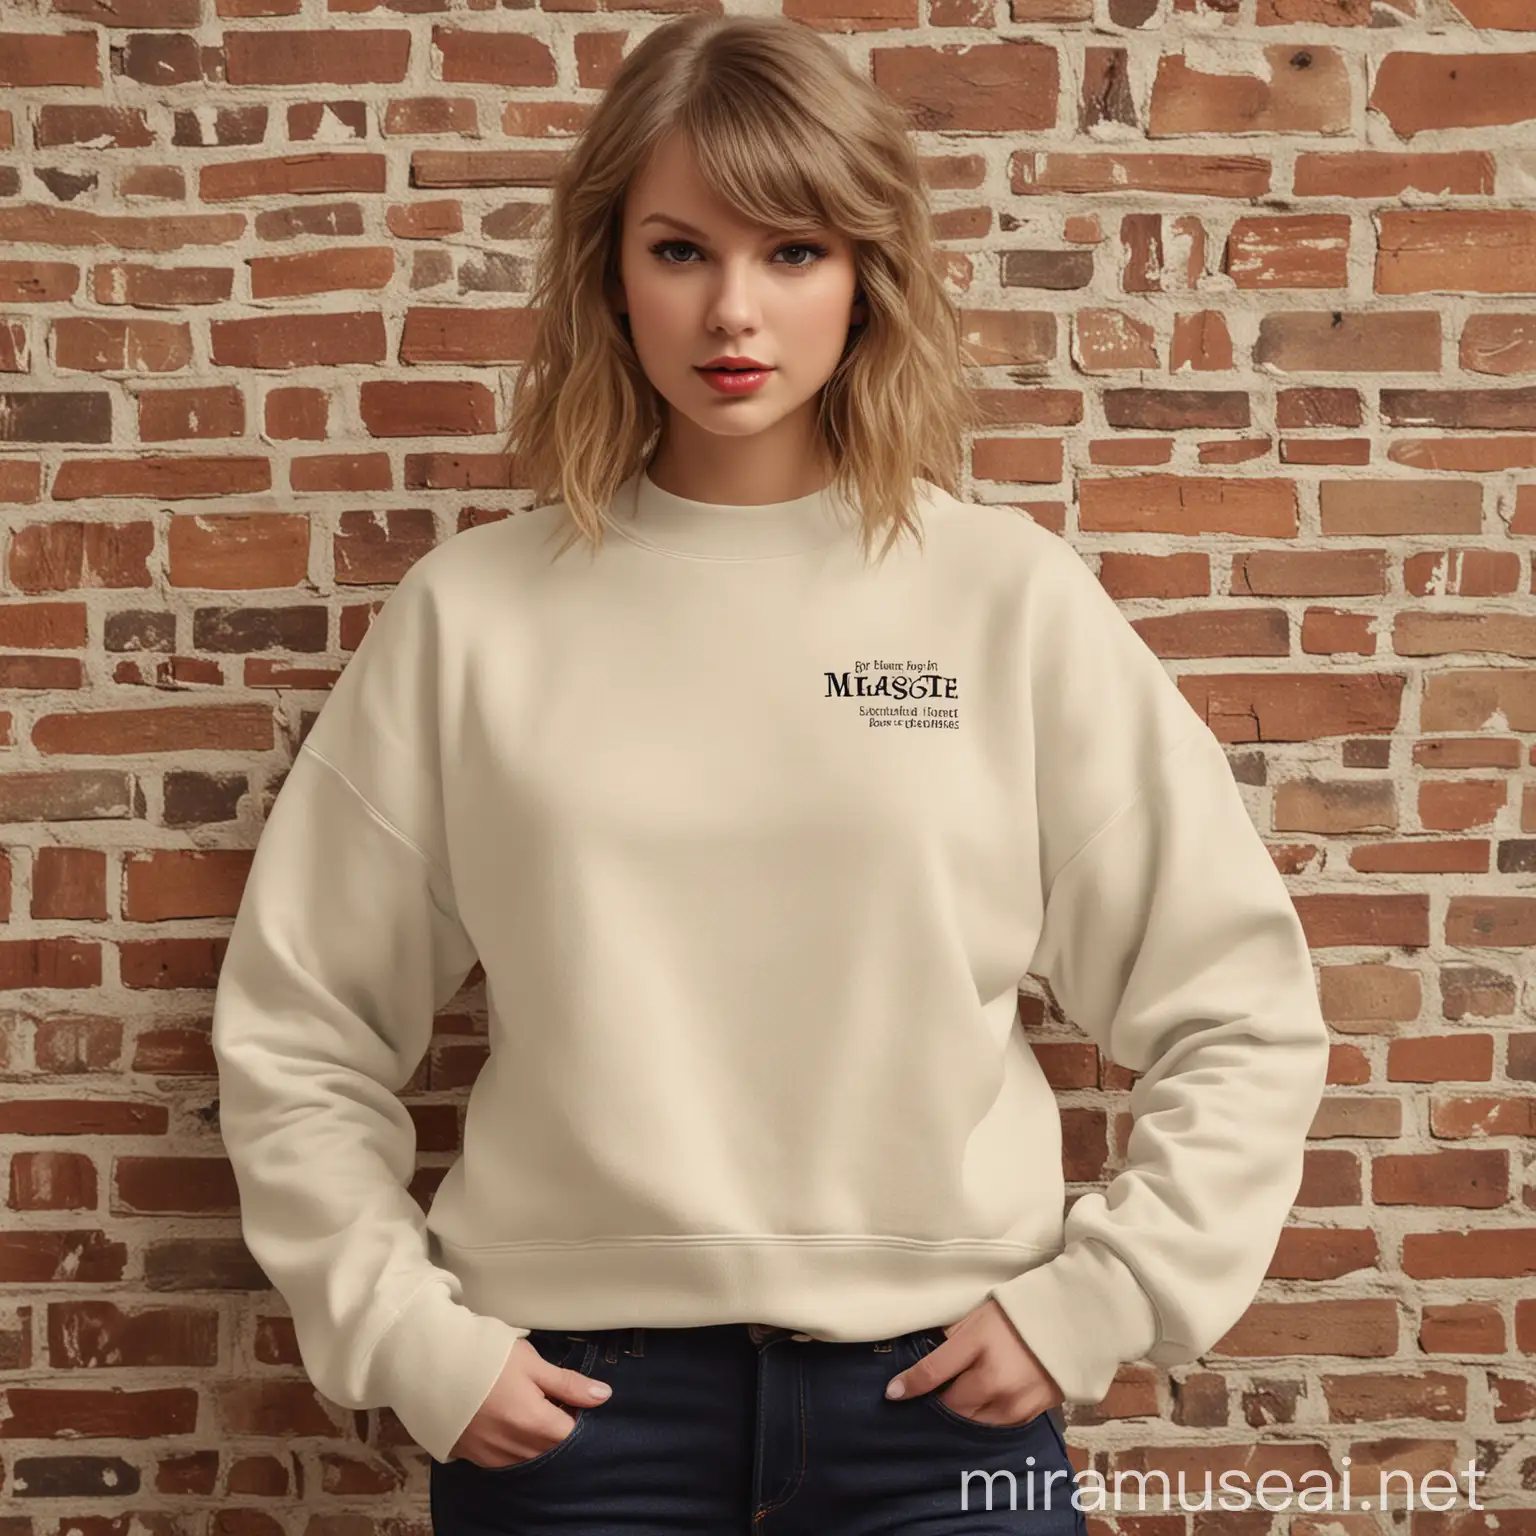 Taylor Swift Inspired Crewneck Sweatshirt Mockup with Vintage Aesthetic